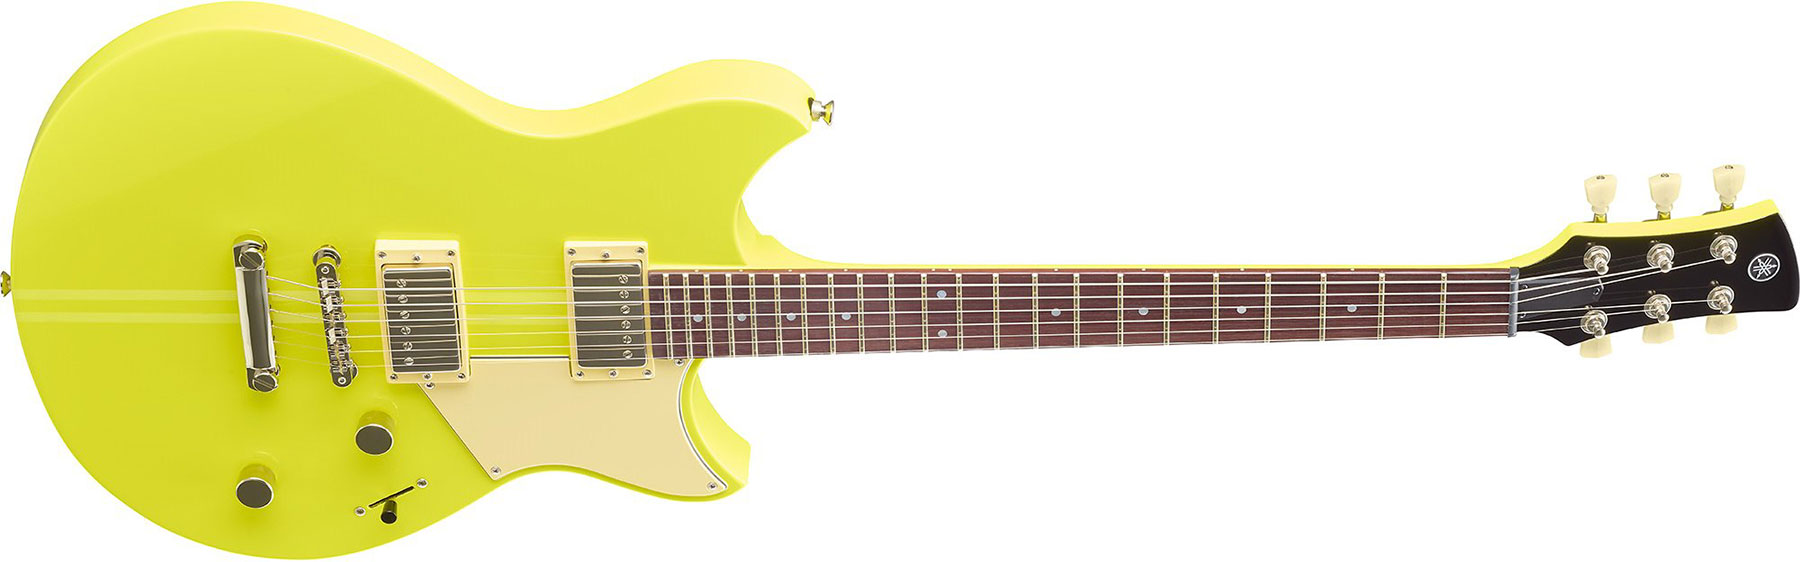 Yamaha Rse20 Revstar Element Hh Ht Rw - Neon Yellow - Guitarra eléctrica de doble corte - Variation 1